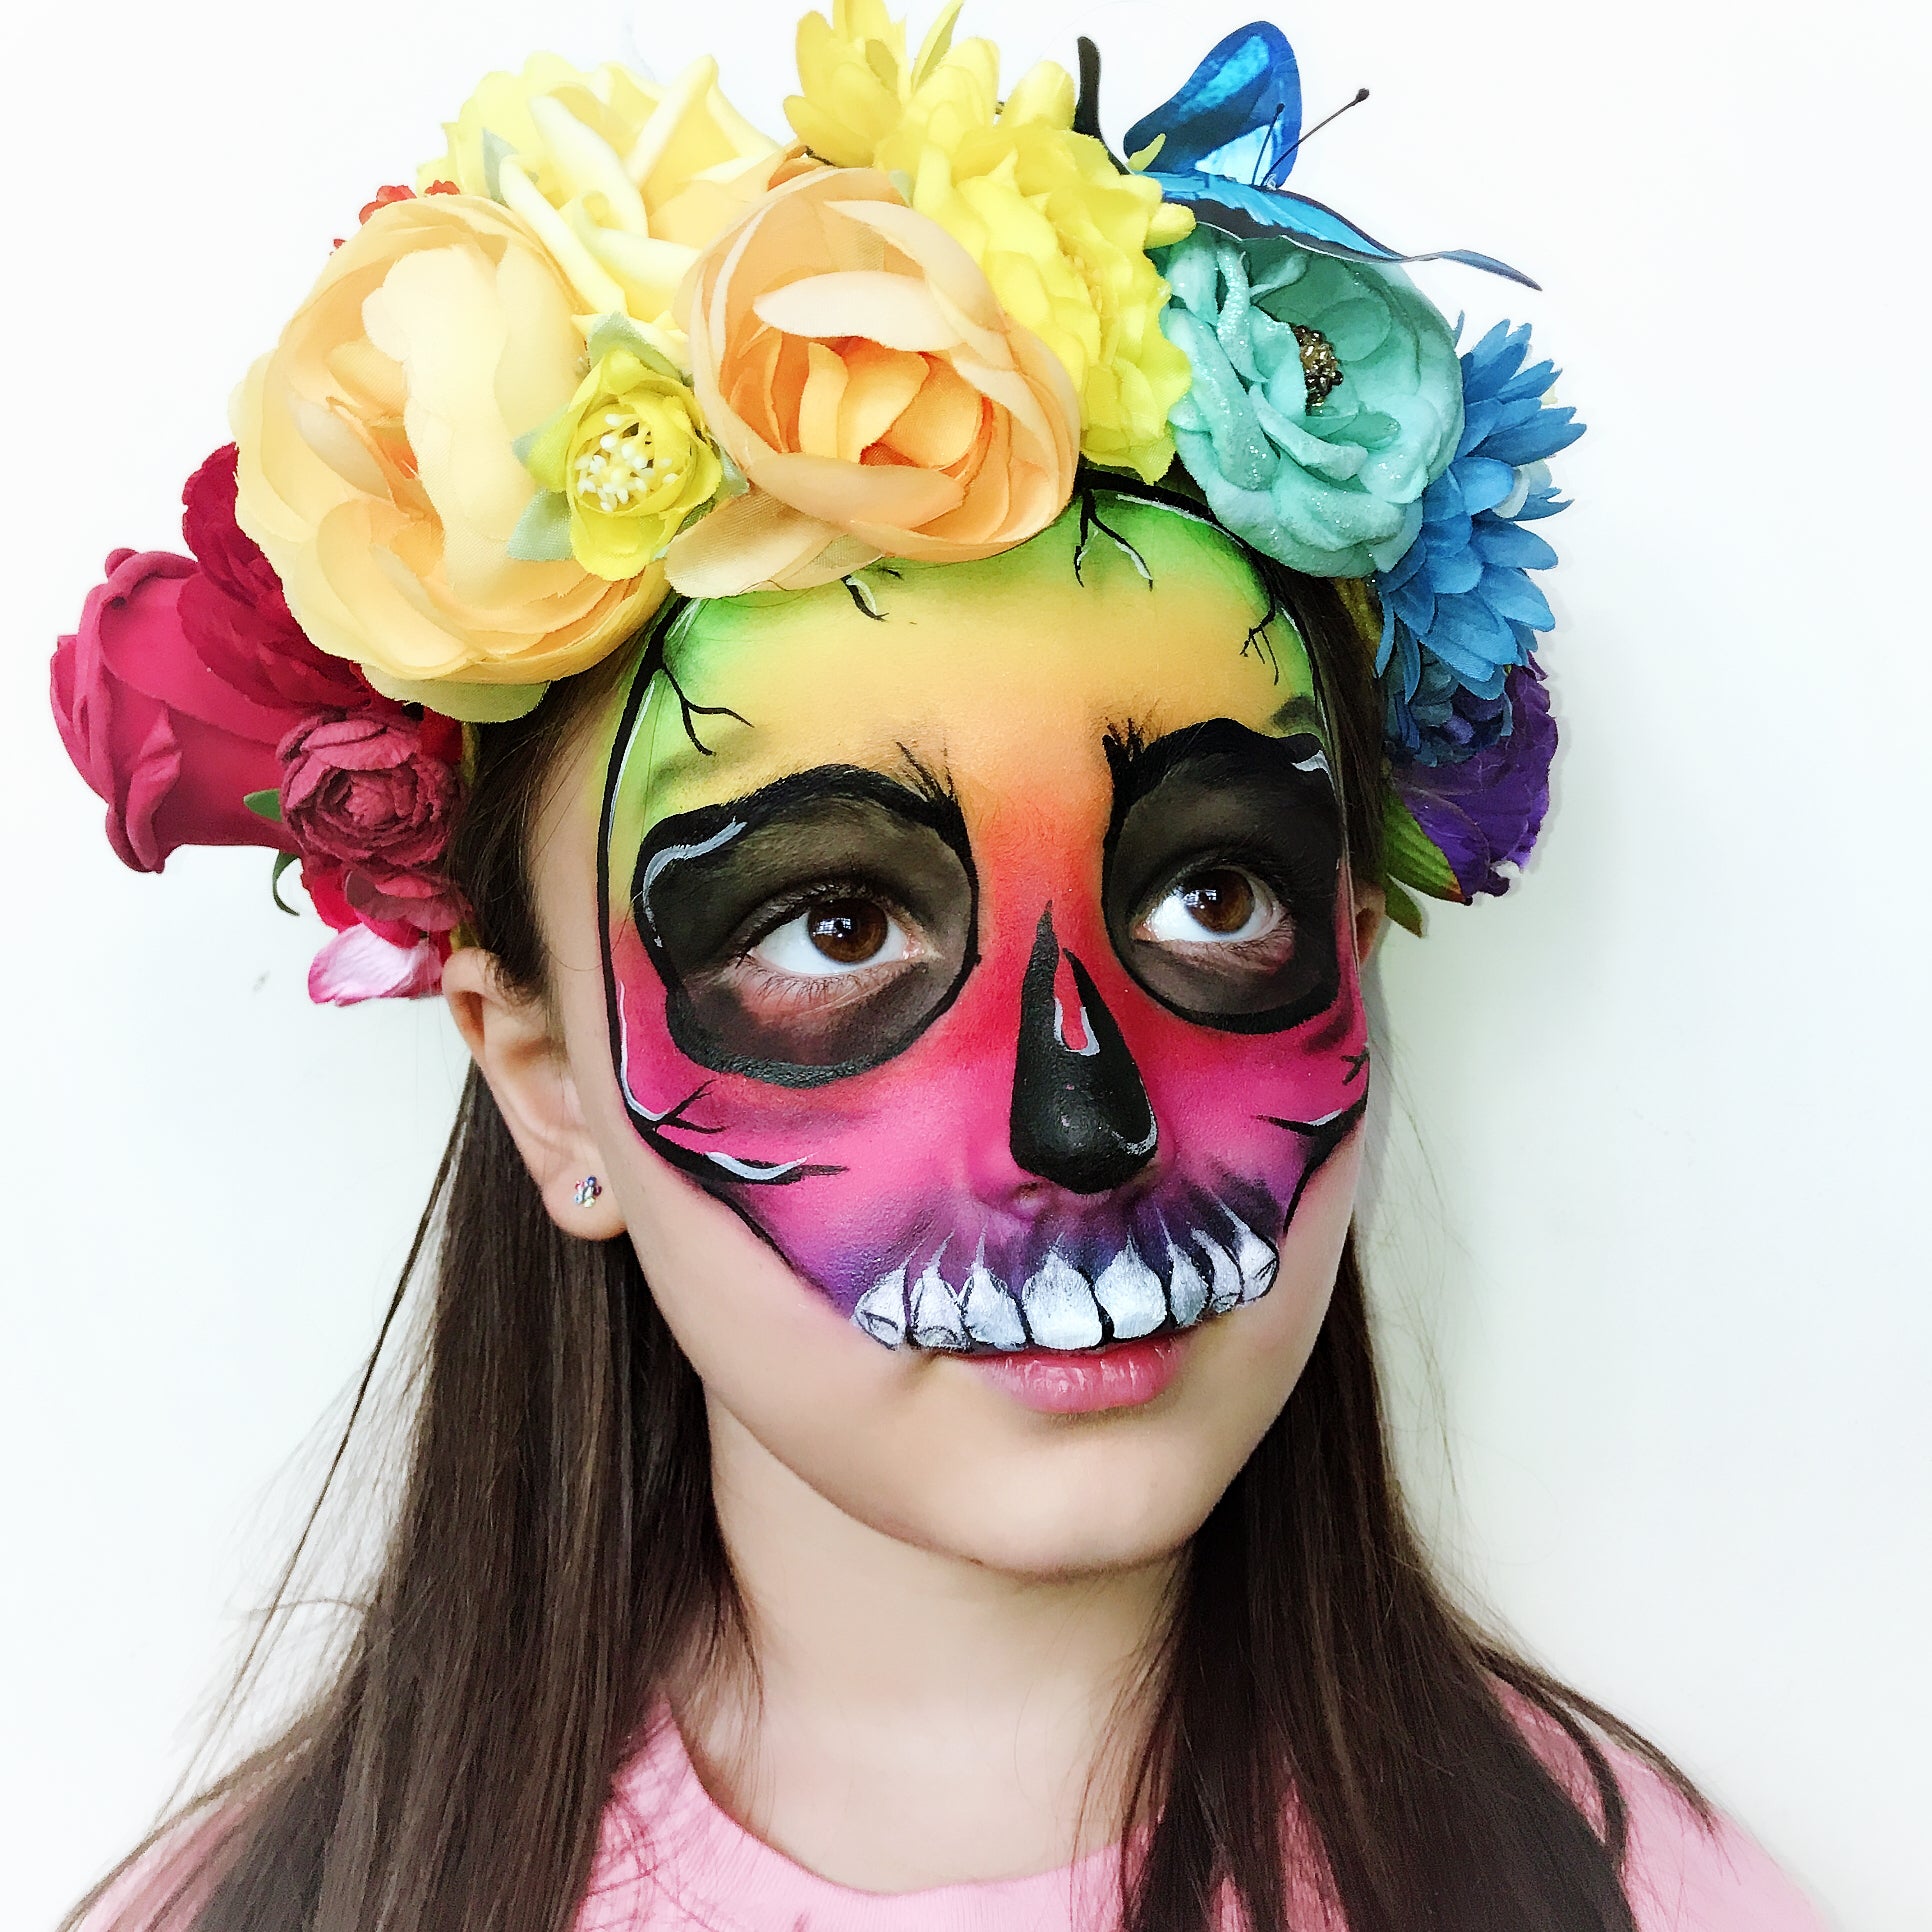 Rainbow Skull by Marina